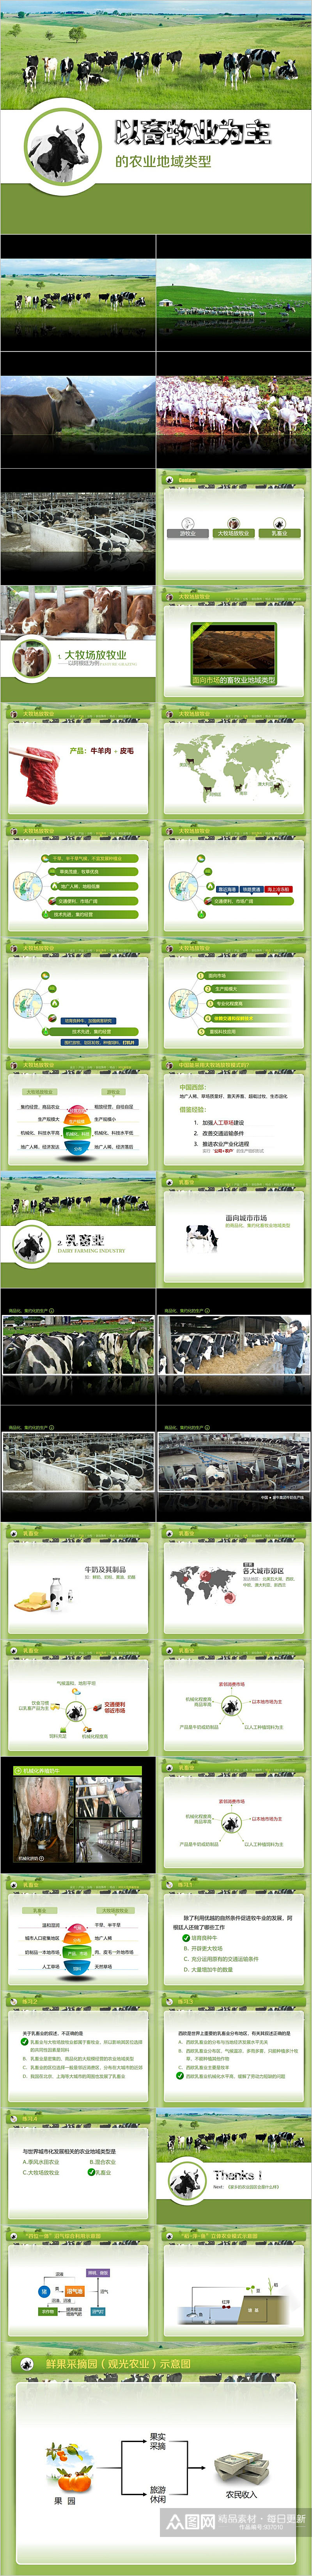 养牛畜牧业发展PPT模板素材